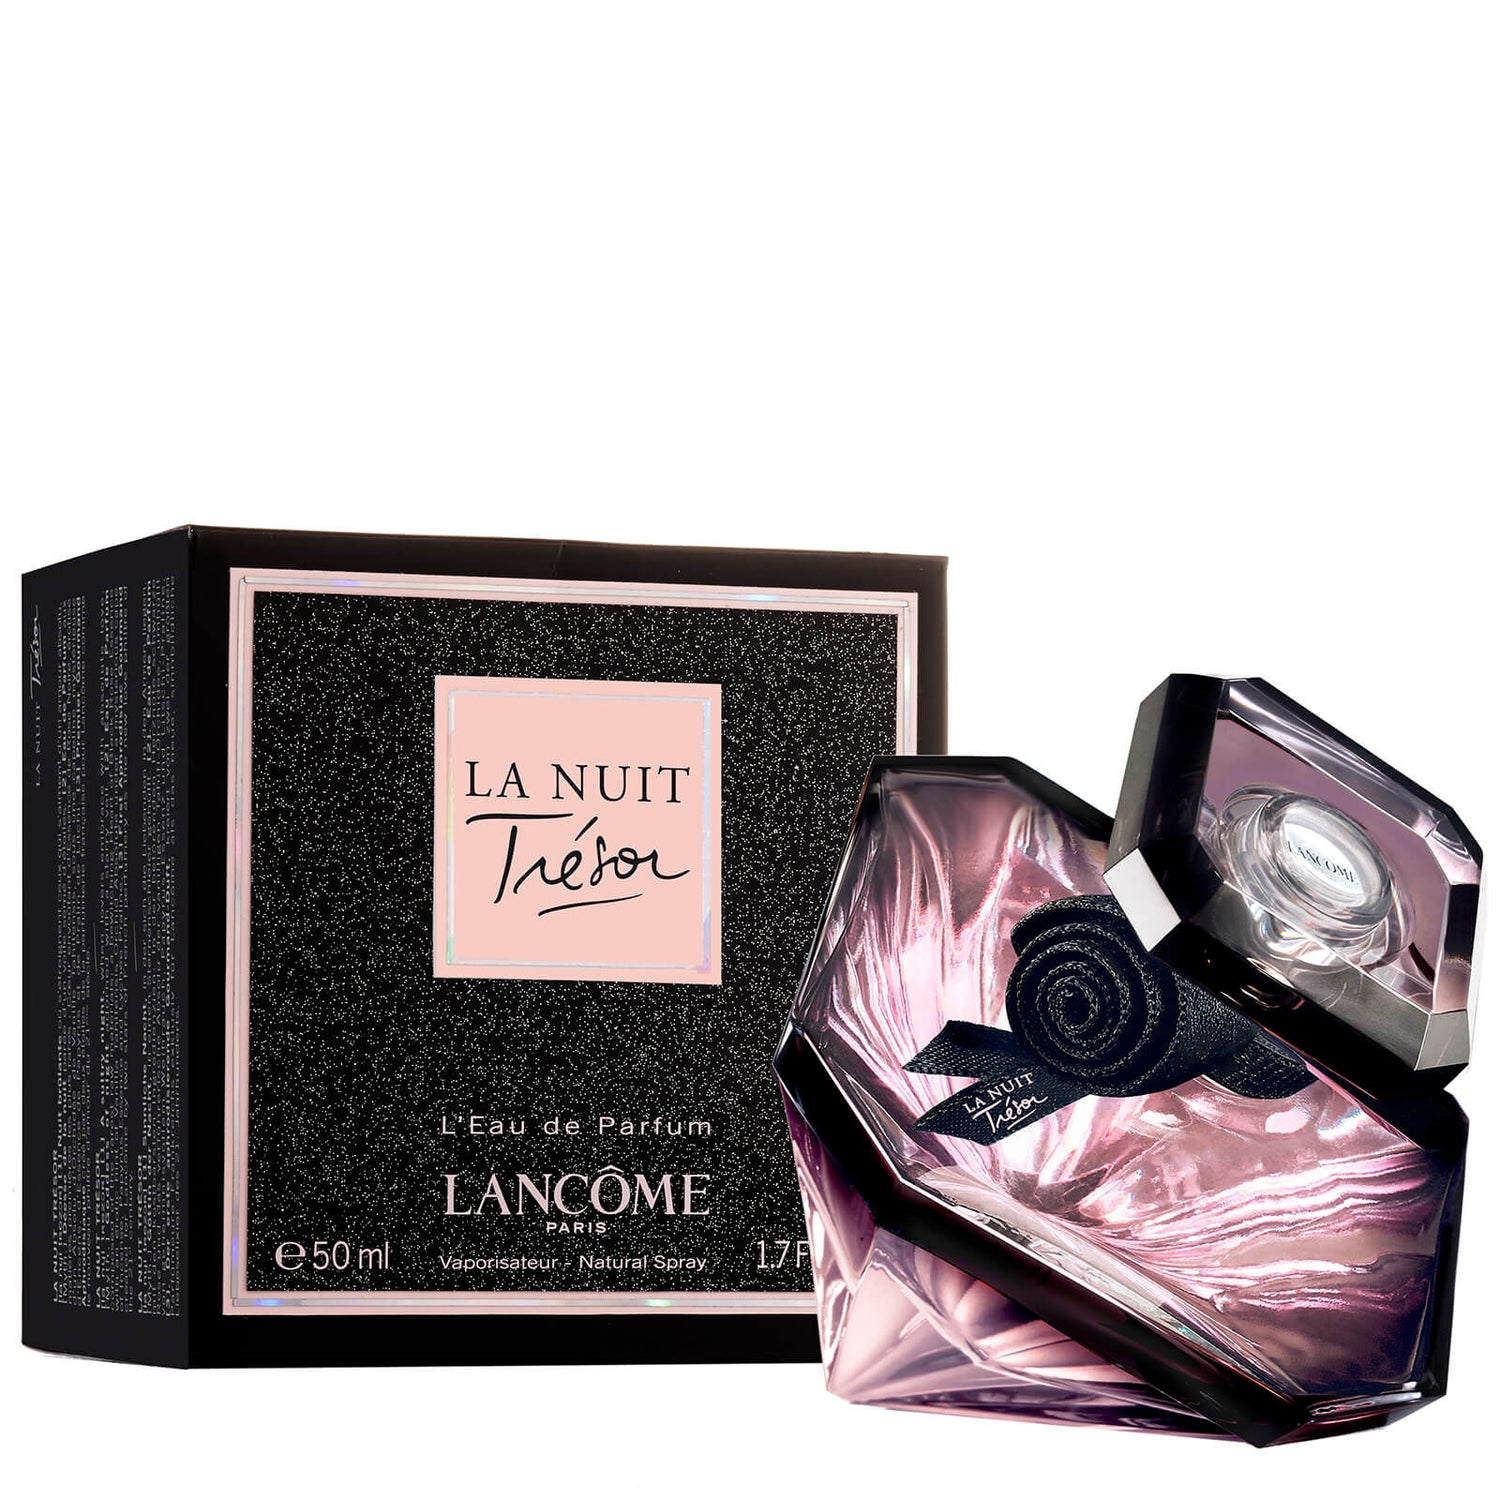 Lancôme Tresor La Nuit Eau de Parfum 50ml